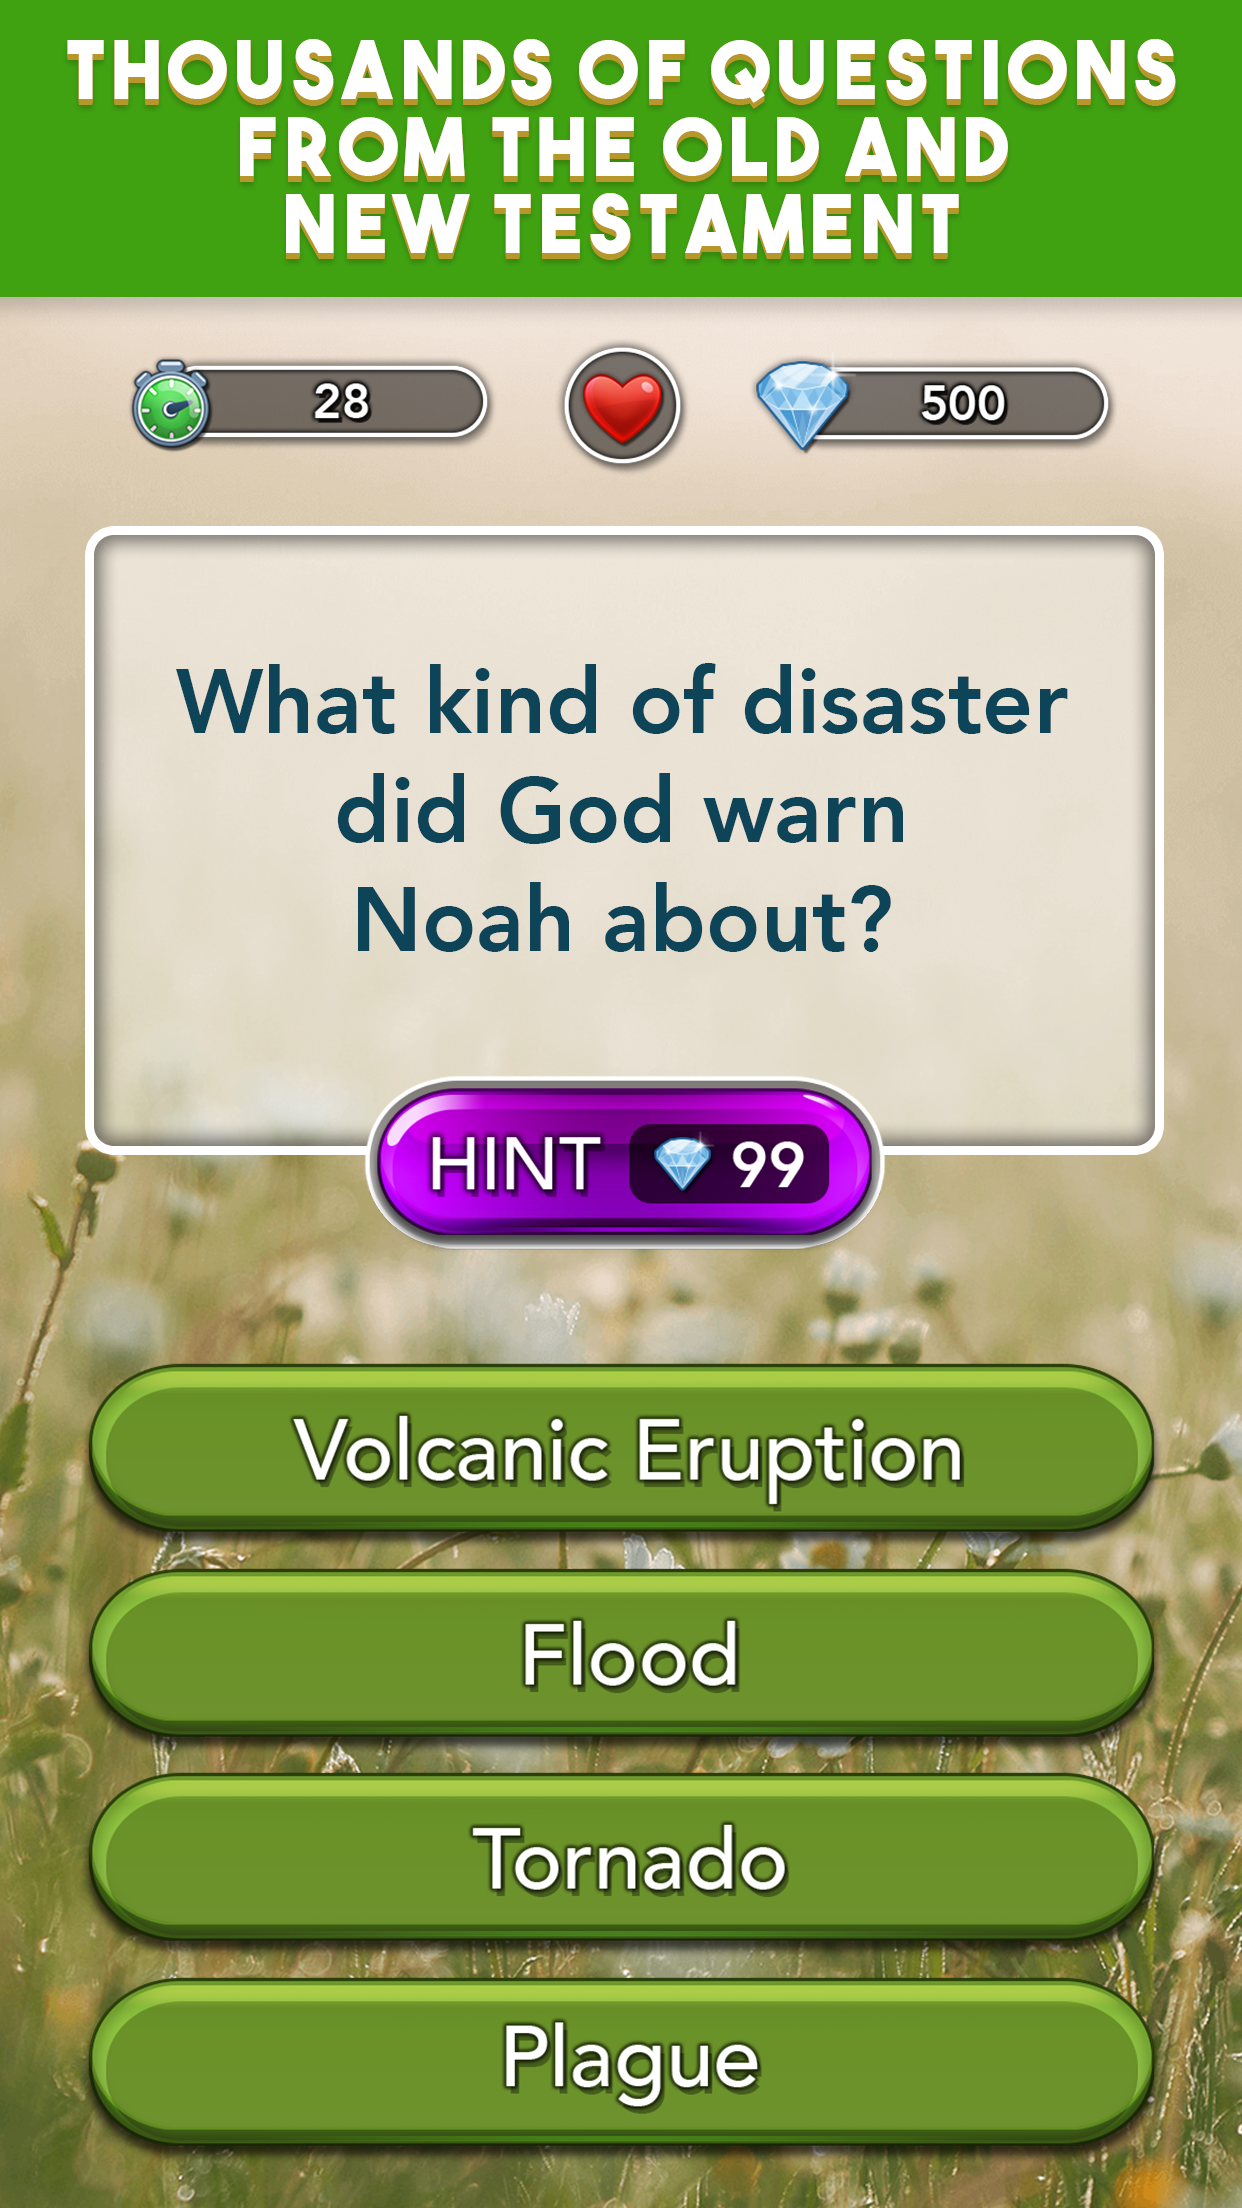 Screenshot of Daily Bible Trivia Bible Games